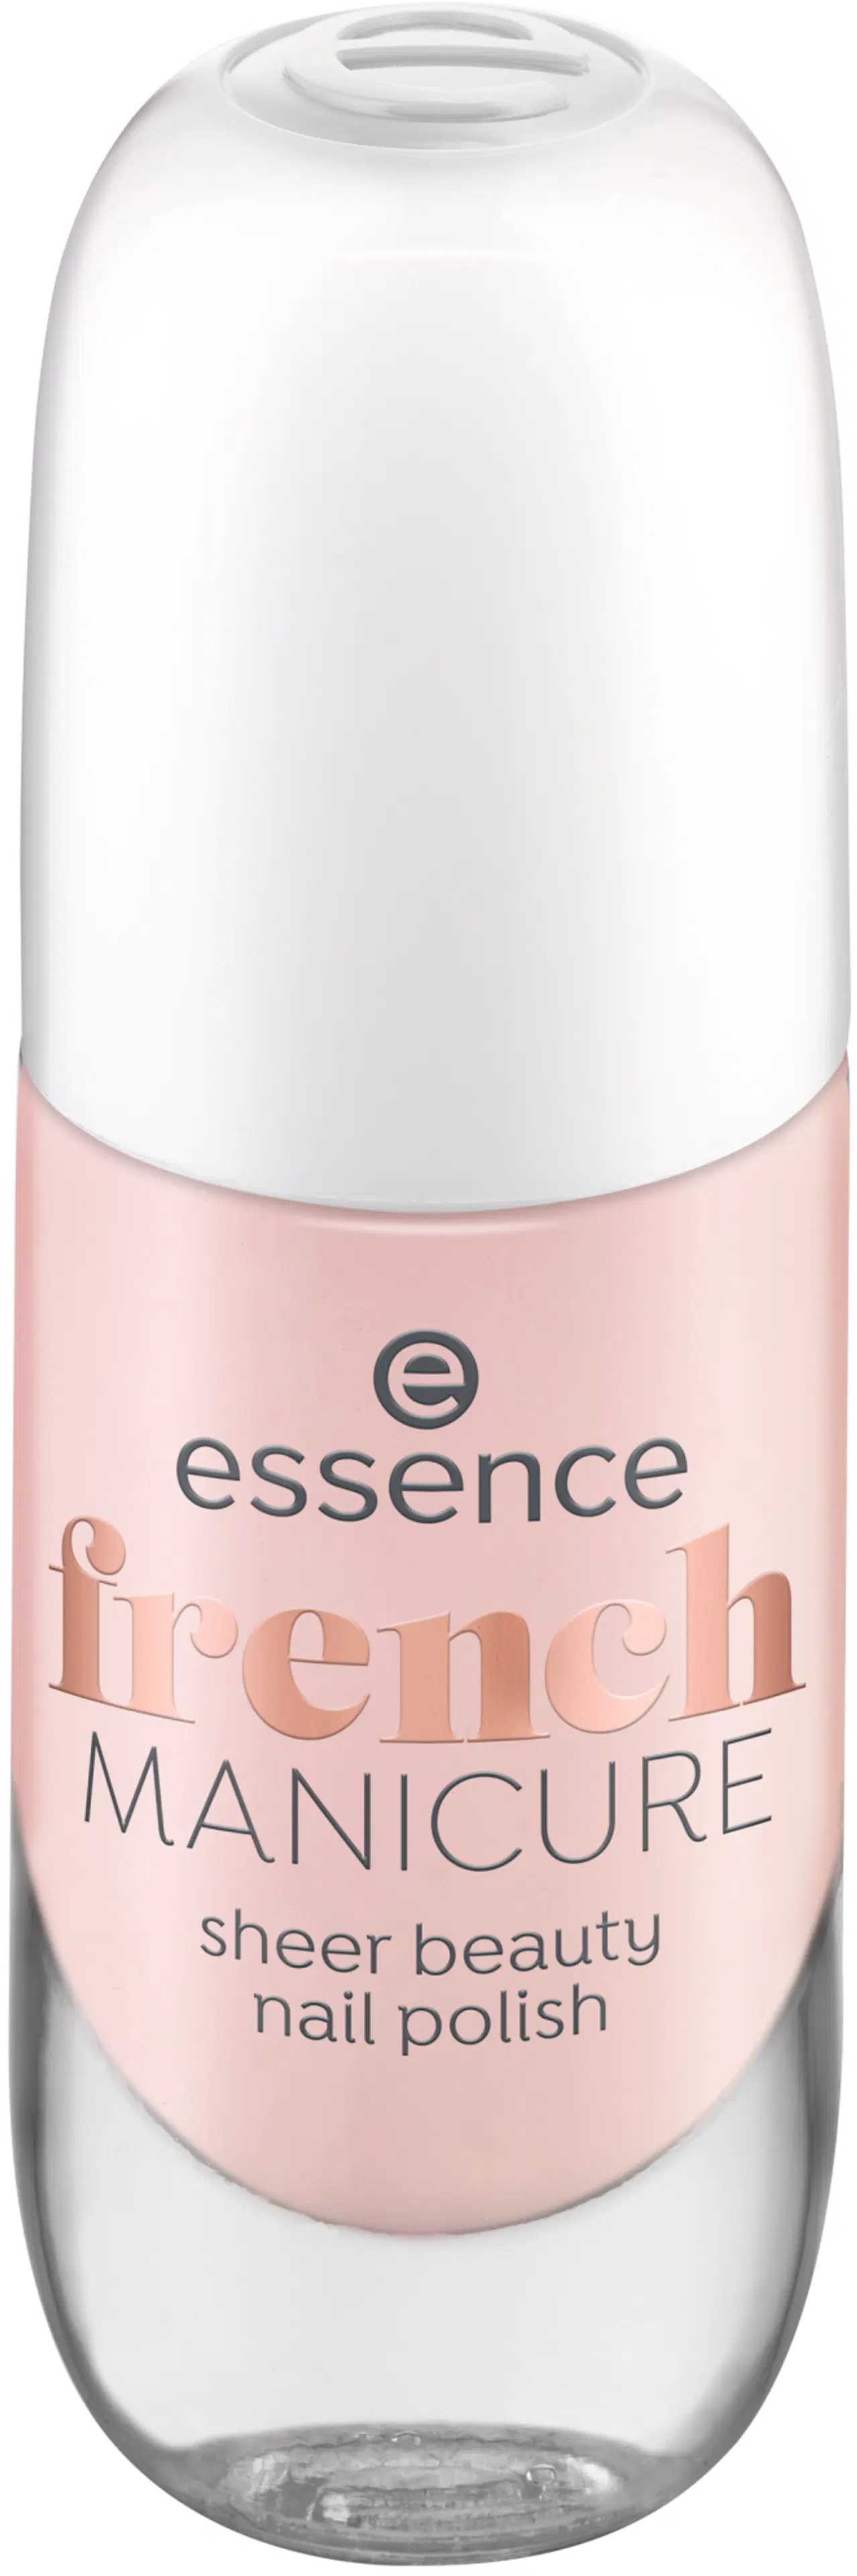 essence french MANICURE sheer beauty kynsilakka 8 ml